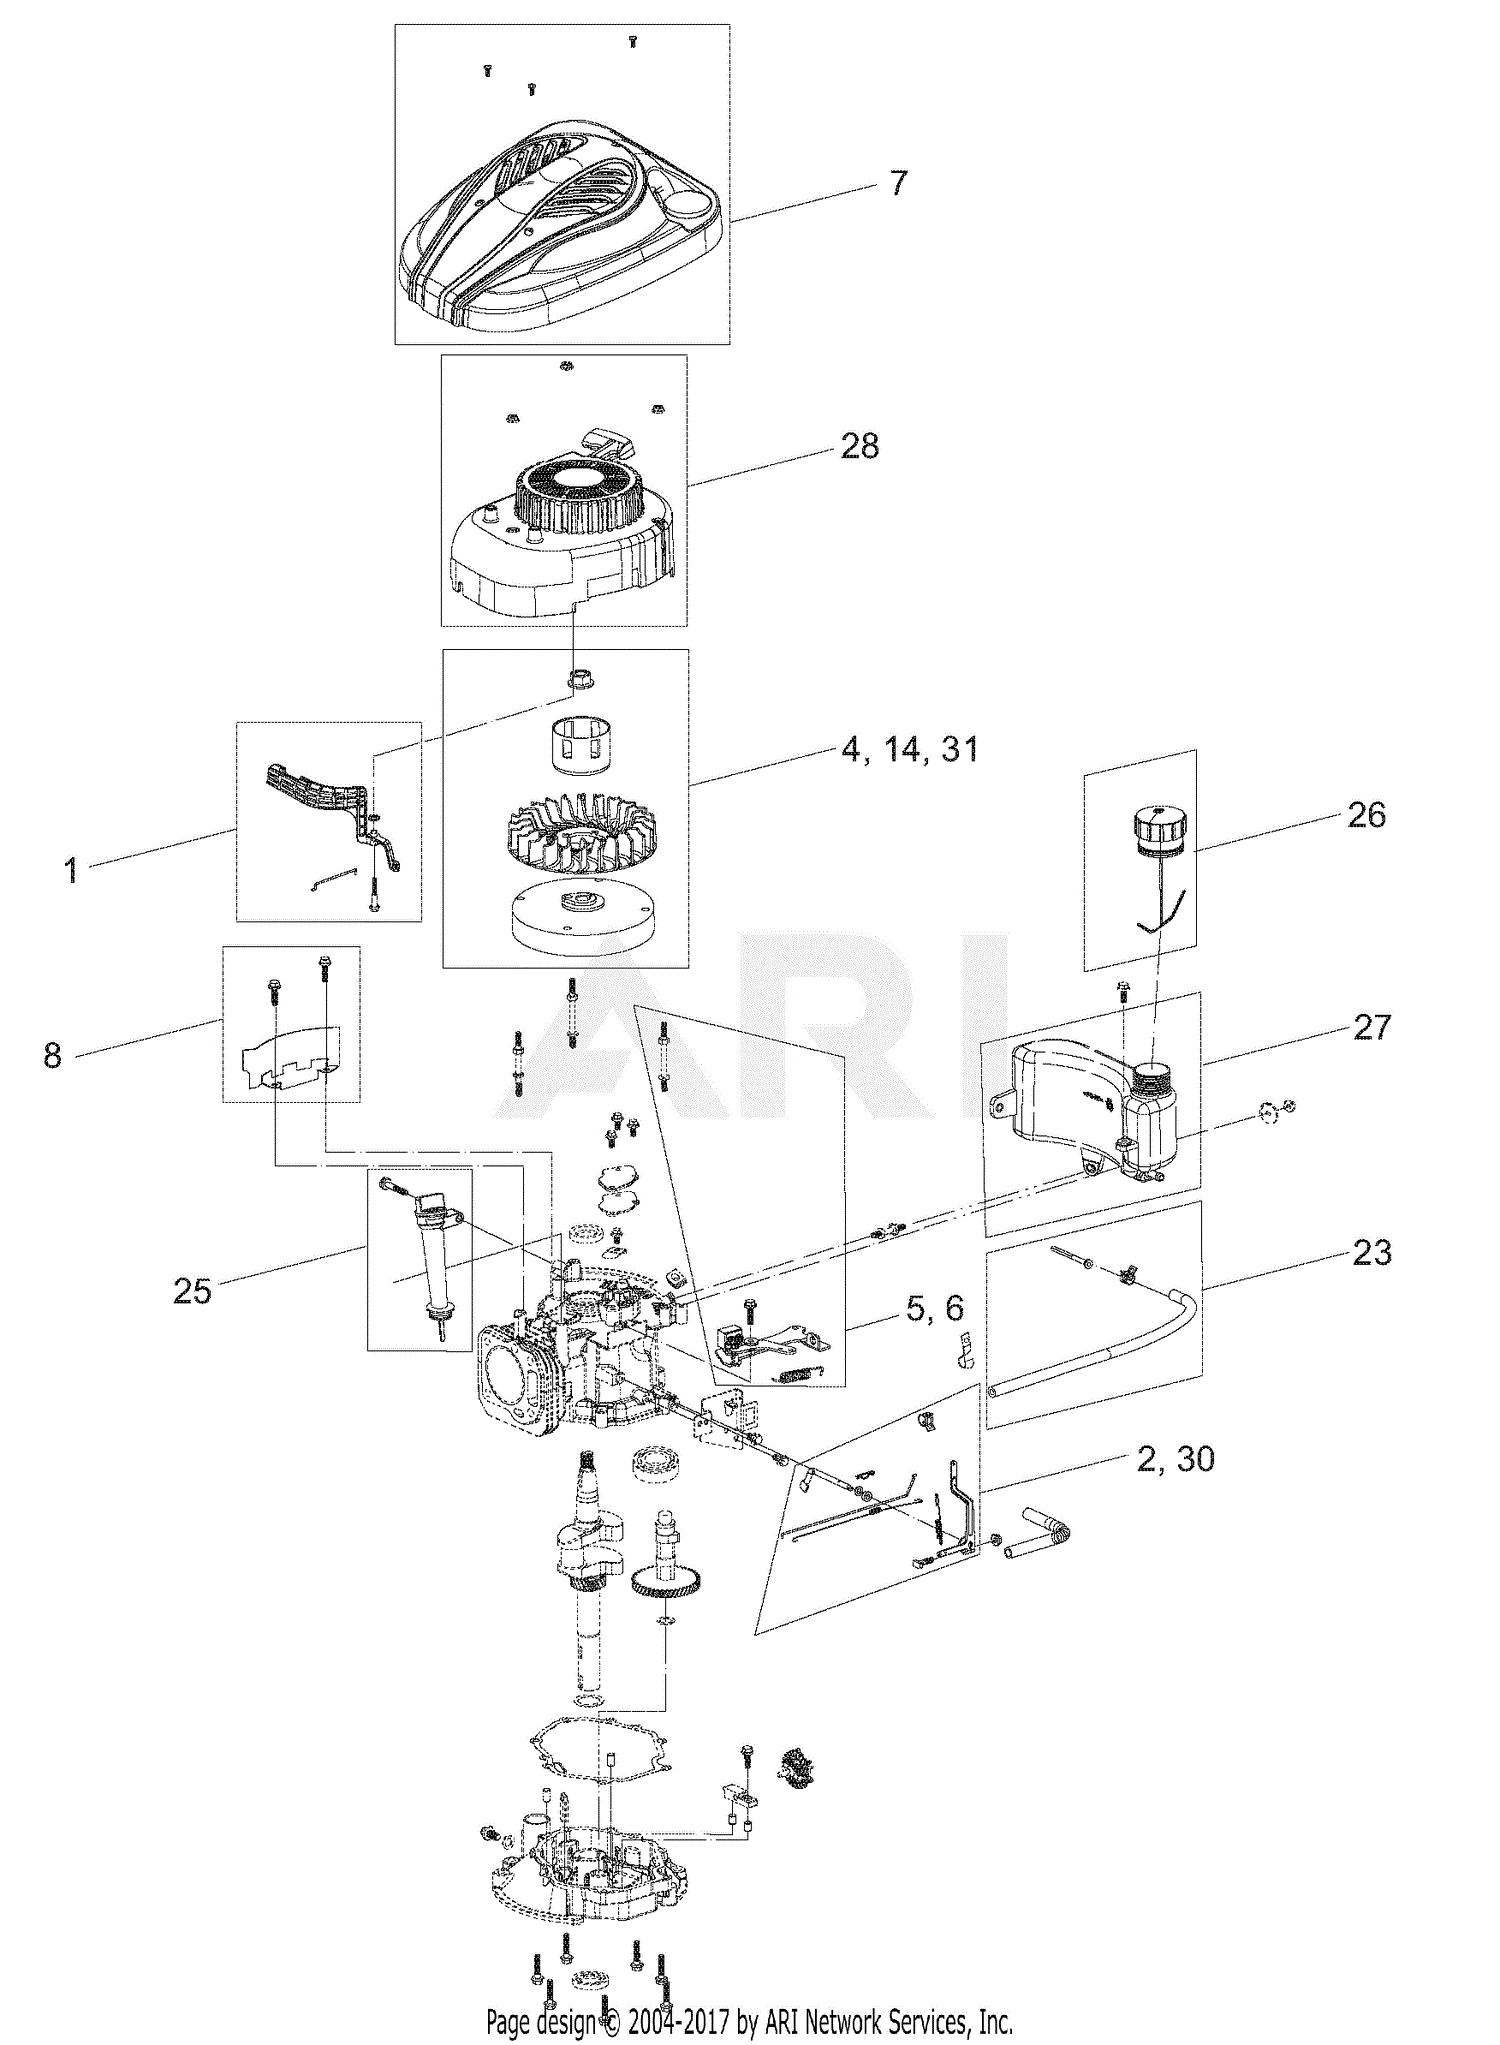 [DIAGRAM] 5l40e Parts Diagram FULL Version HD Quality Parts Diagram